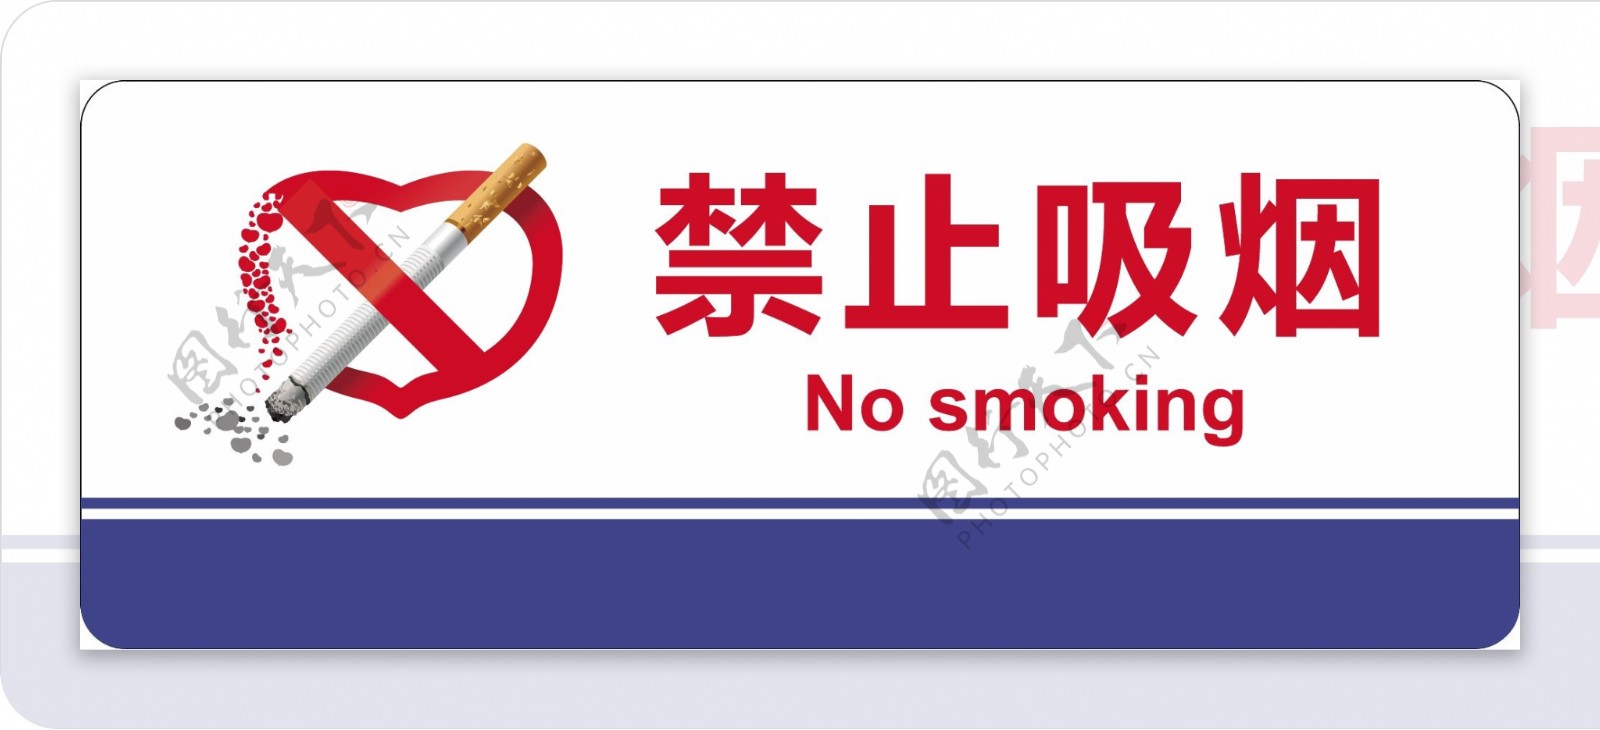 高级禁止吸烟图标